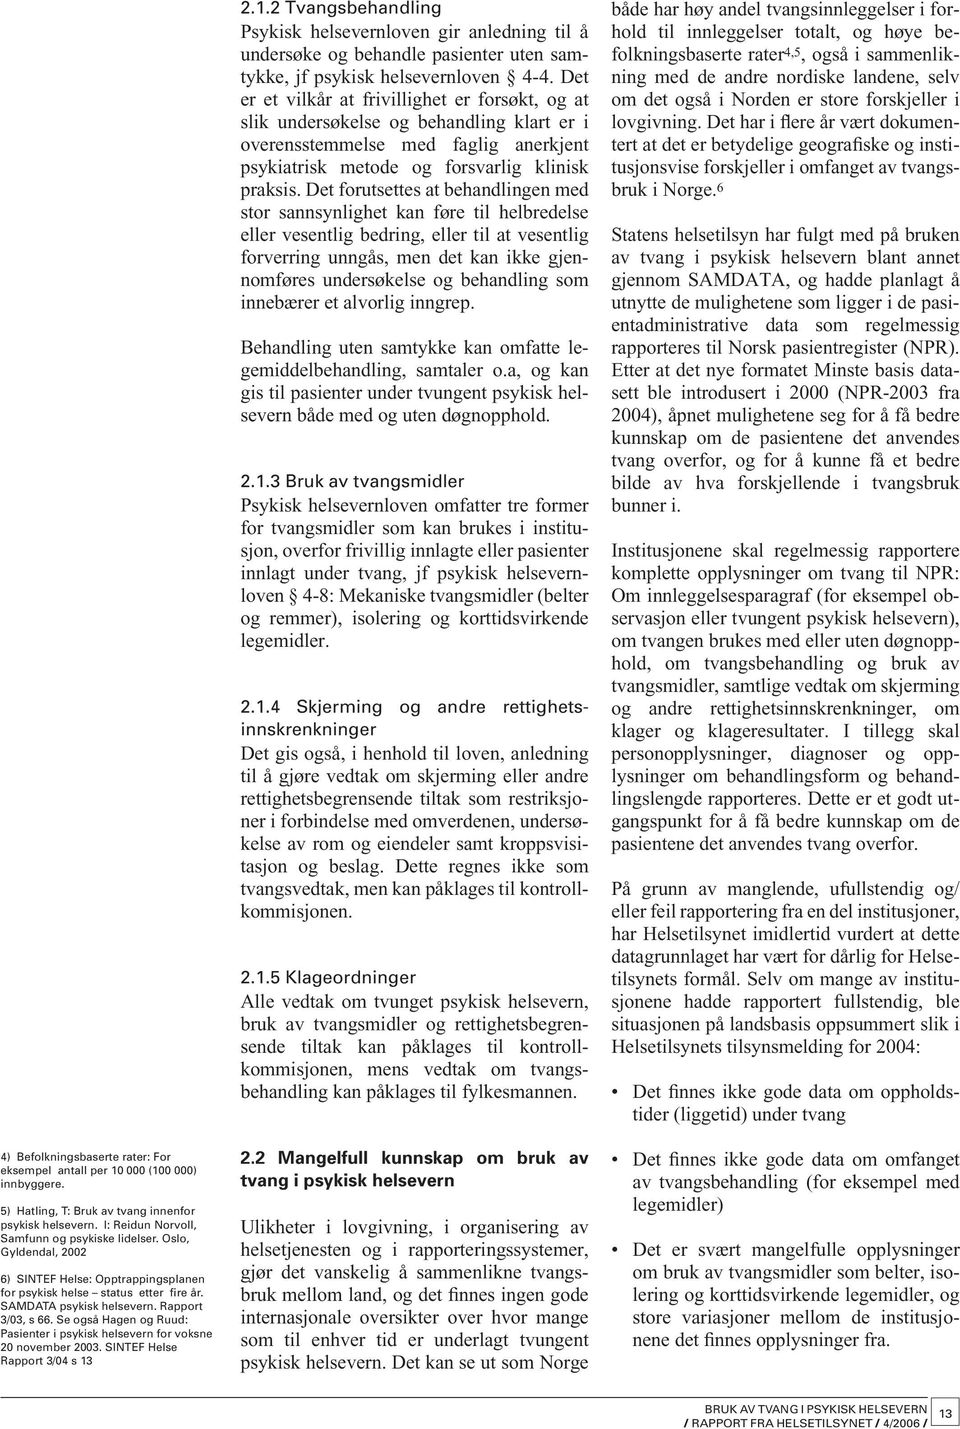 Se også Hagen og Ruud: P asienter i psykisk helsevern for voksne 20 november 2003. SINTEF Helse Rapport 3/04 s 13